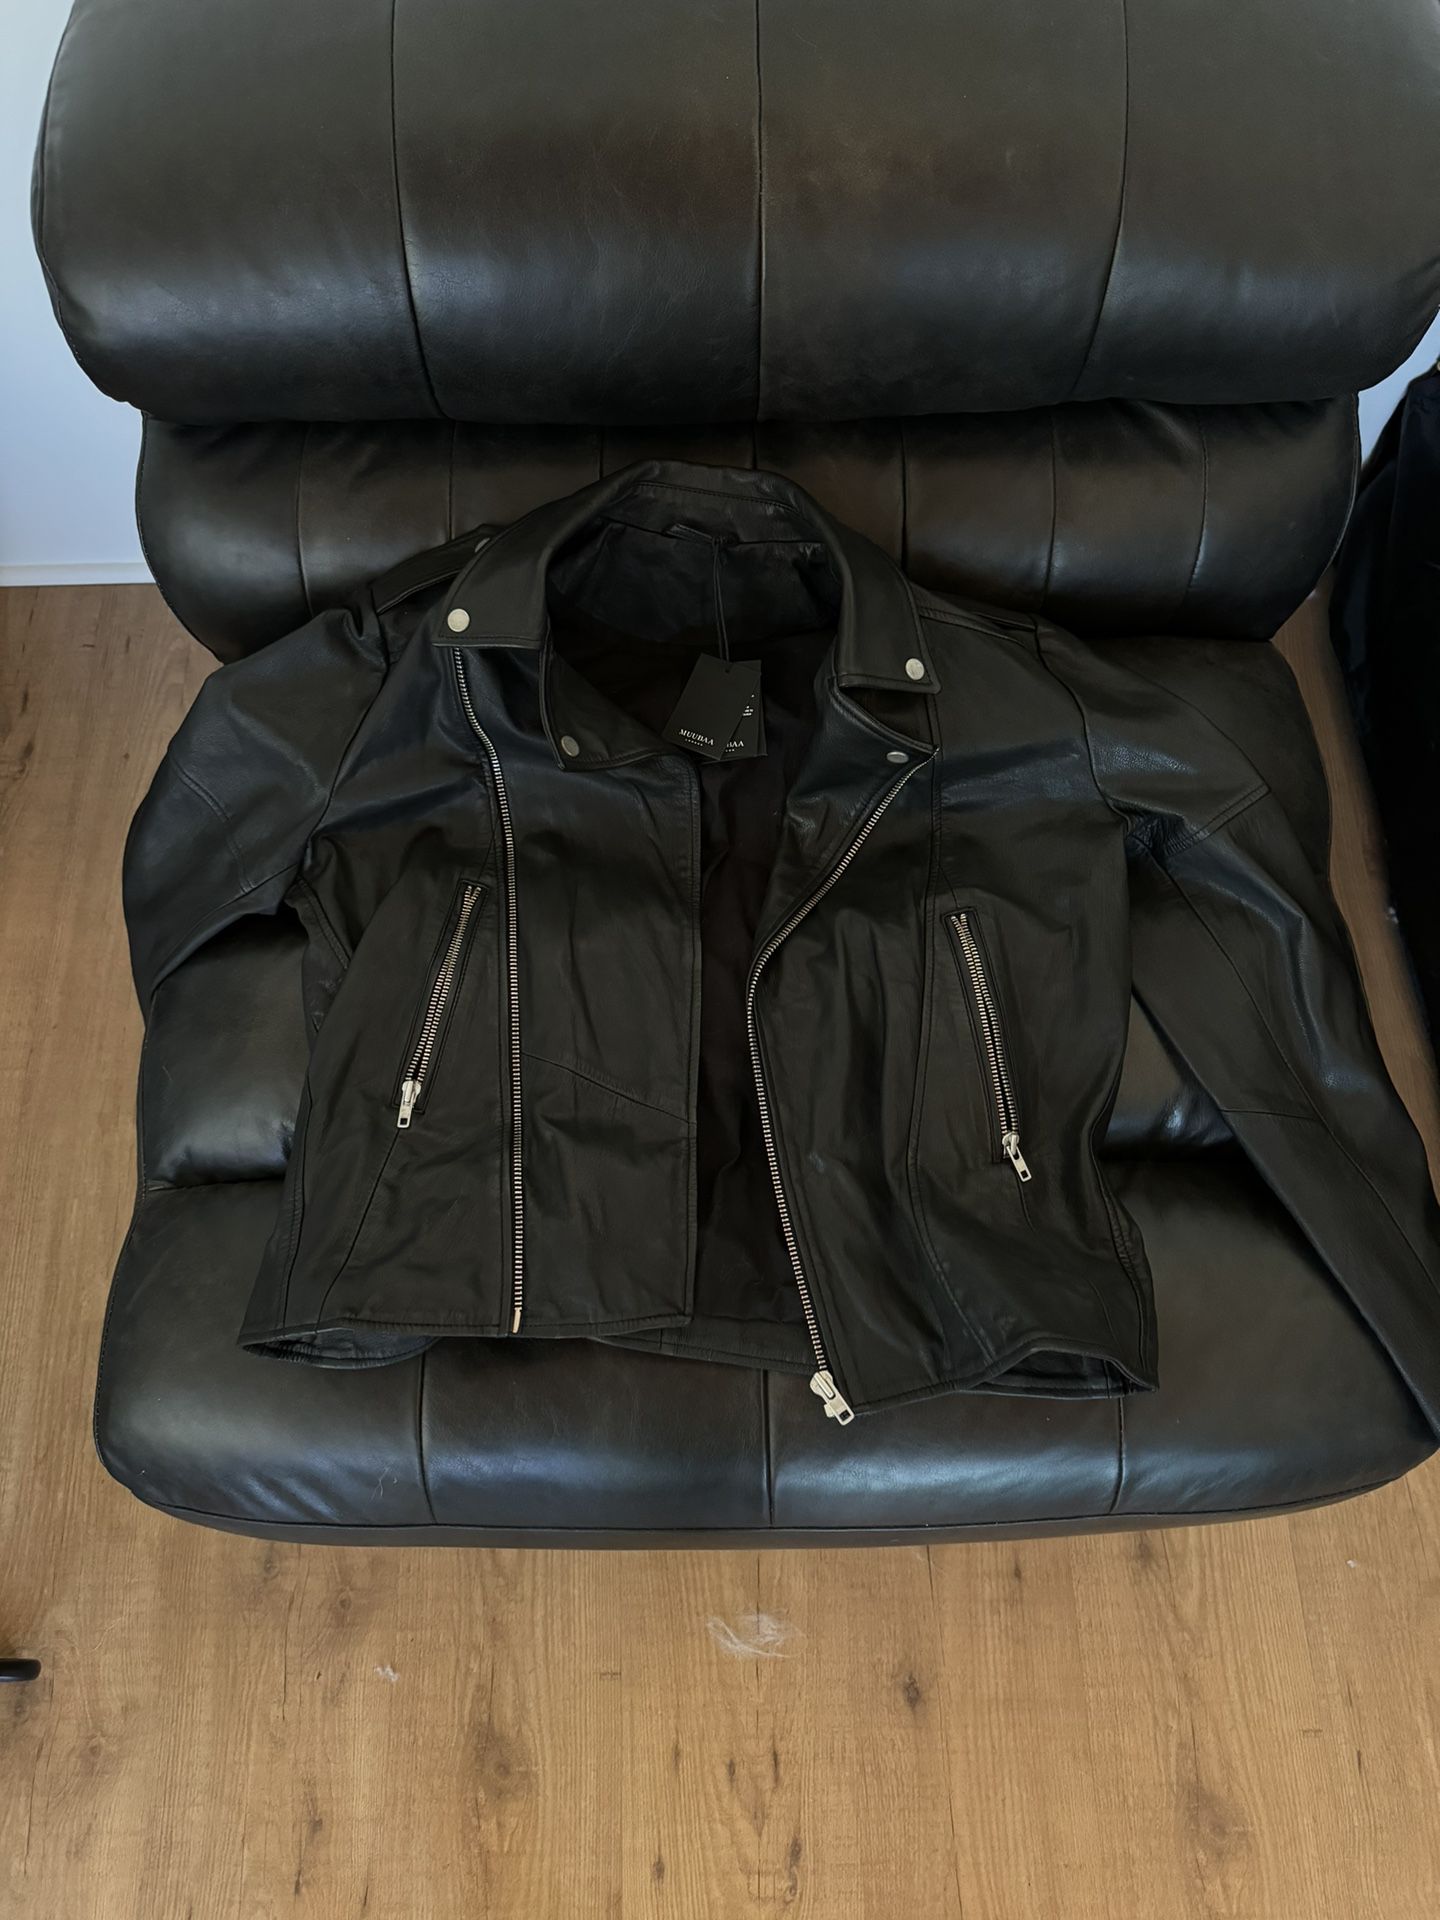 Muubaa Harrington Black Textured Leather Biker Jacket - BRAND NEW (Large)